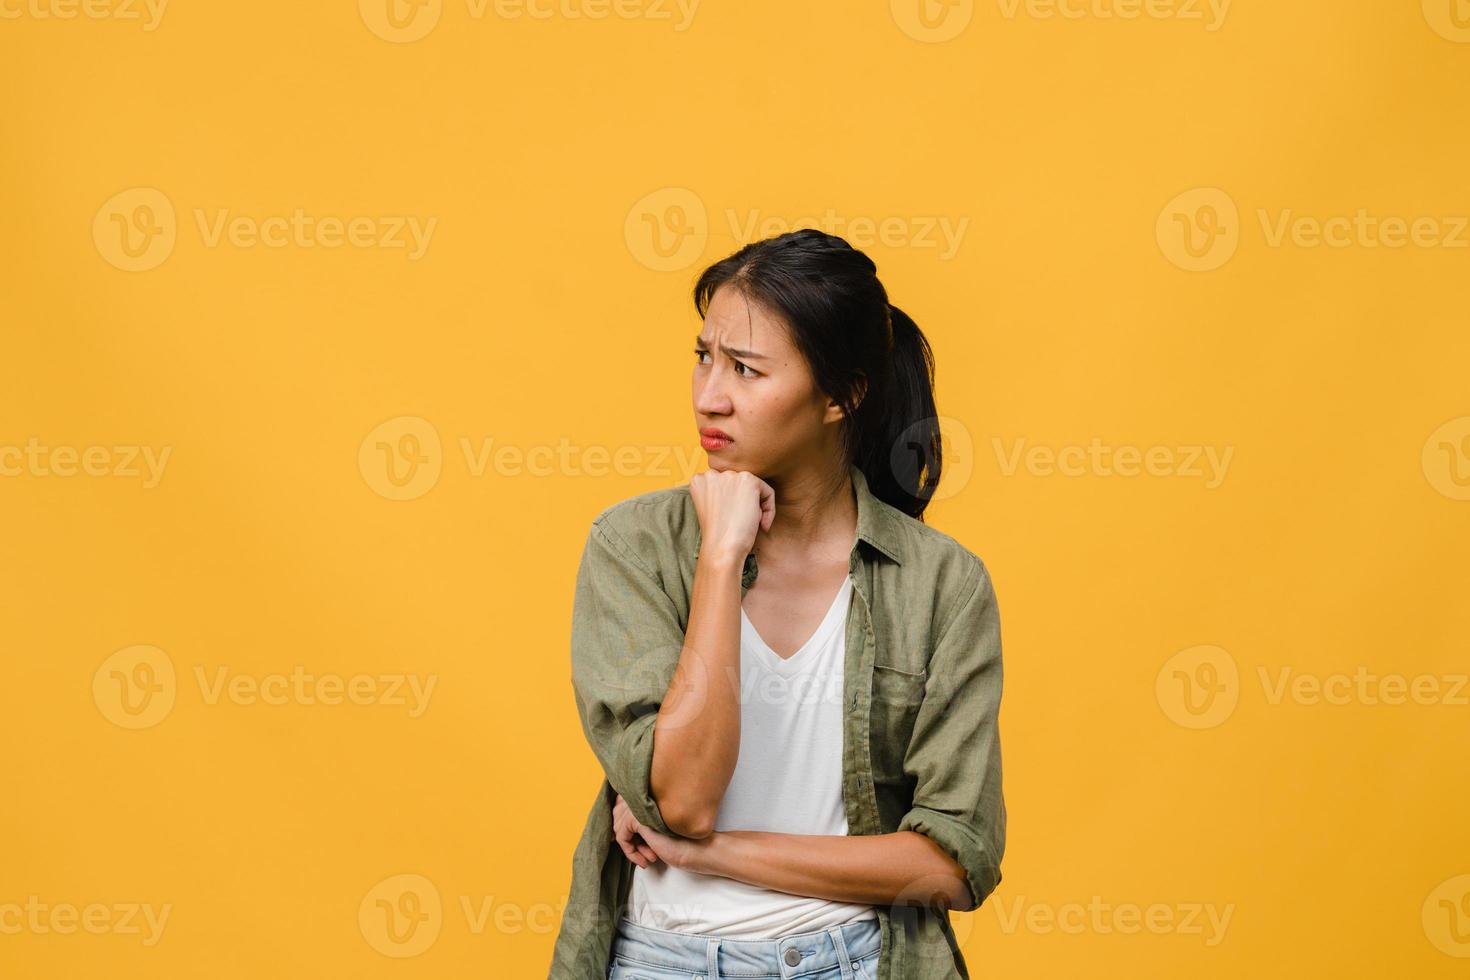 ritratto di giovane donna asiatica con espressione negativa, urla eccitata, pianto emotivo arrabbiato in abbigliamento casual isolato su sfondo giallo con spazio vuoto per la copia. concetto di espressione facciale. foto